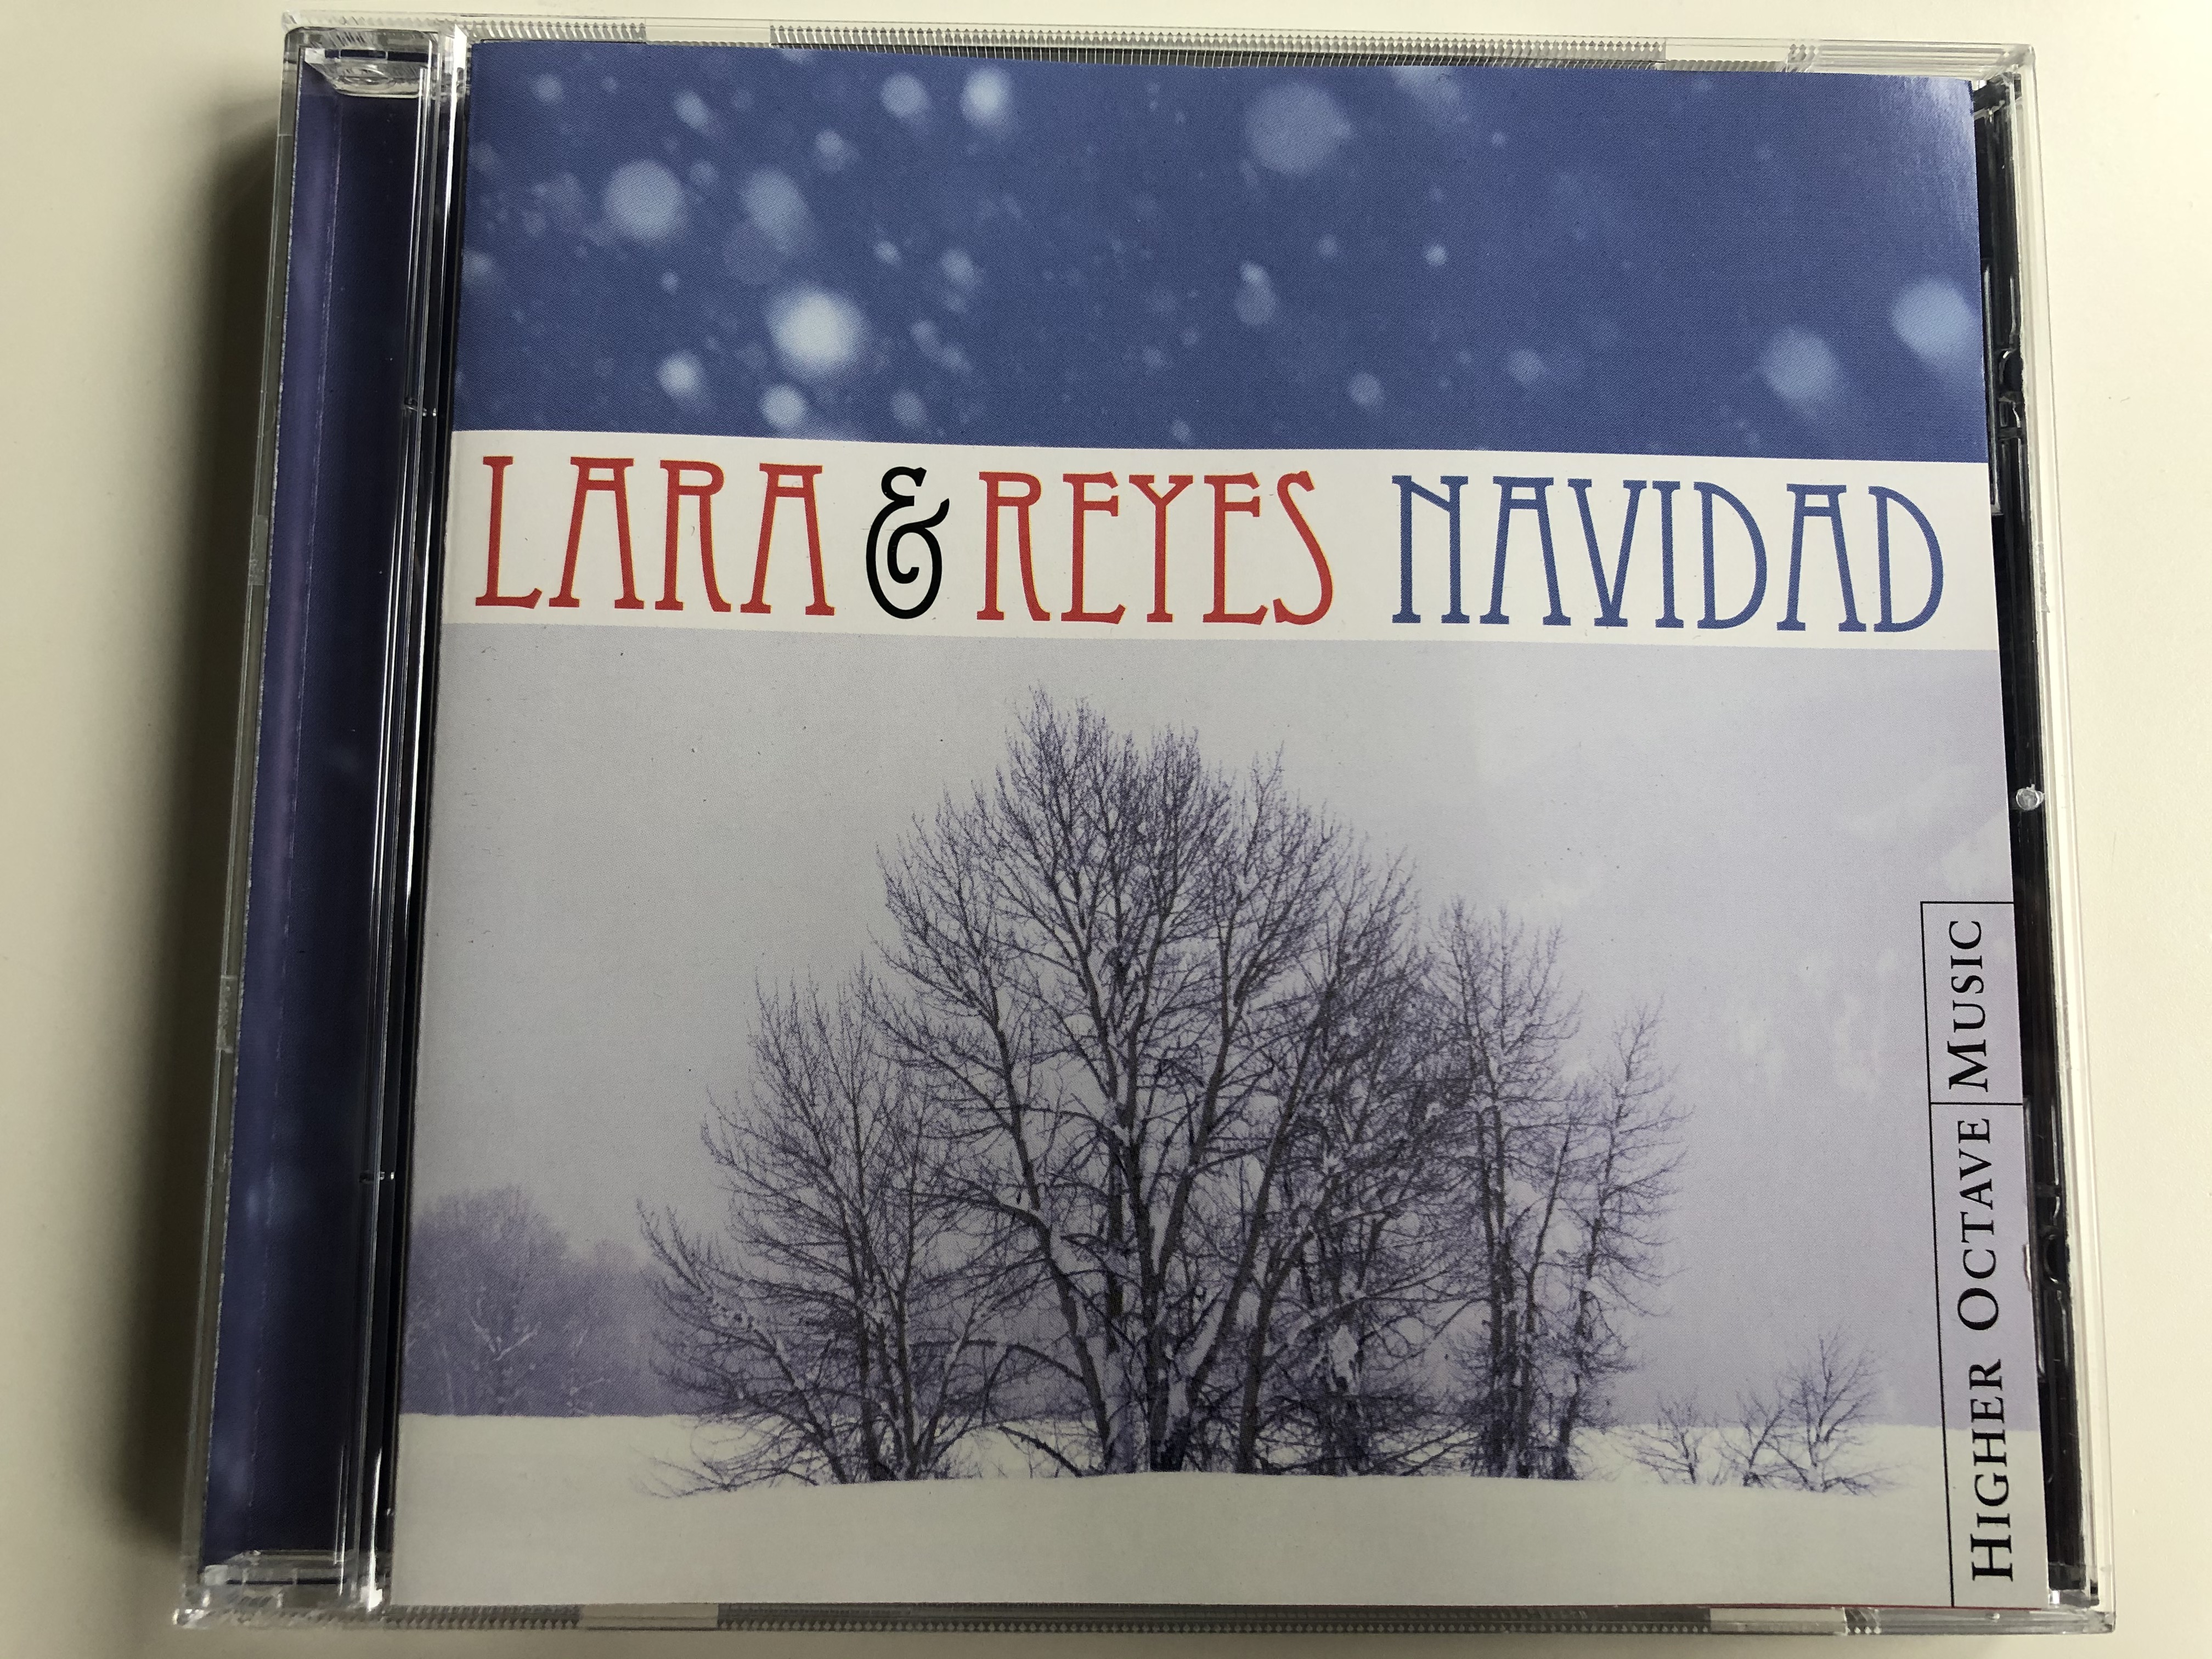 lara-reyes-navidad-higher-octave-music-audio-cd-2000-vhocd77-1-.jpg